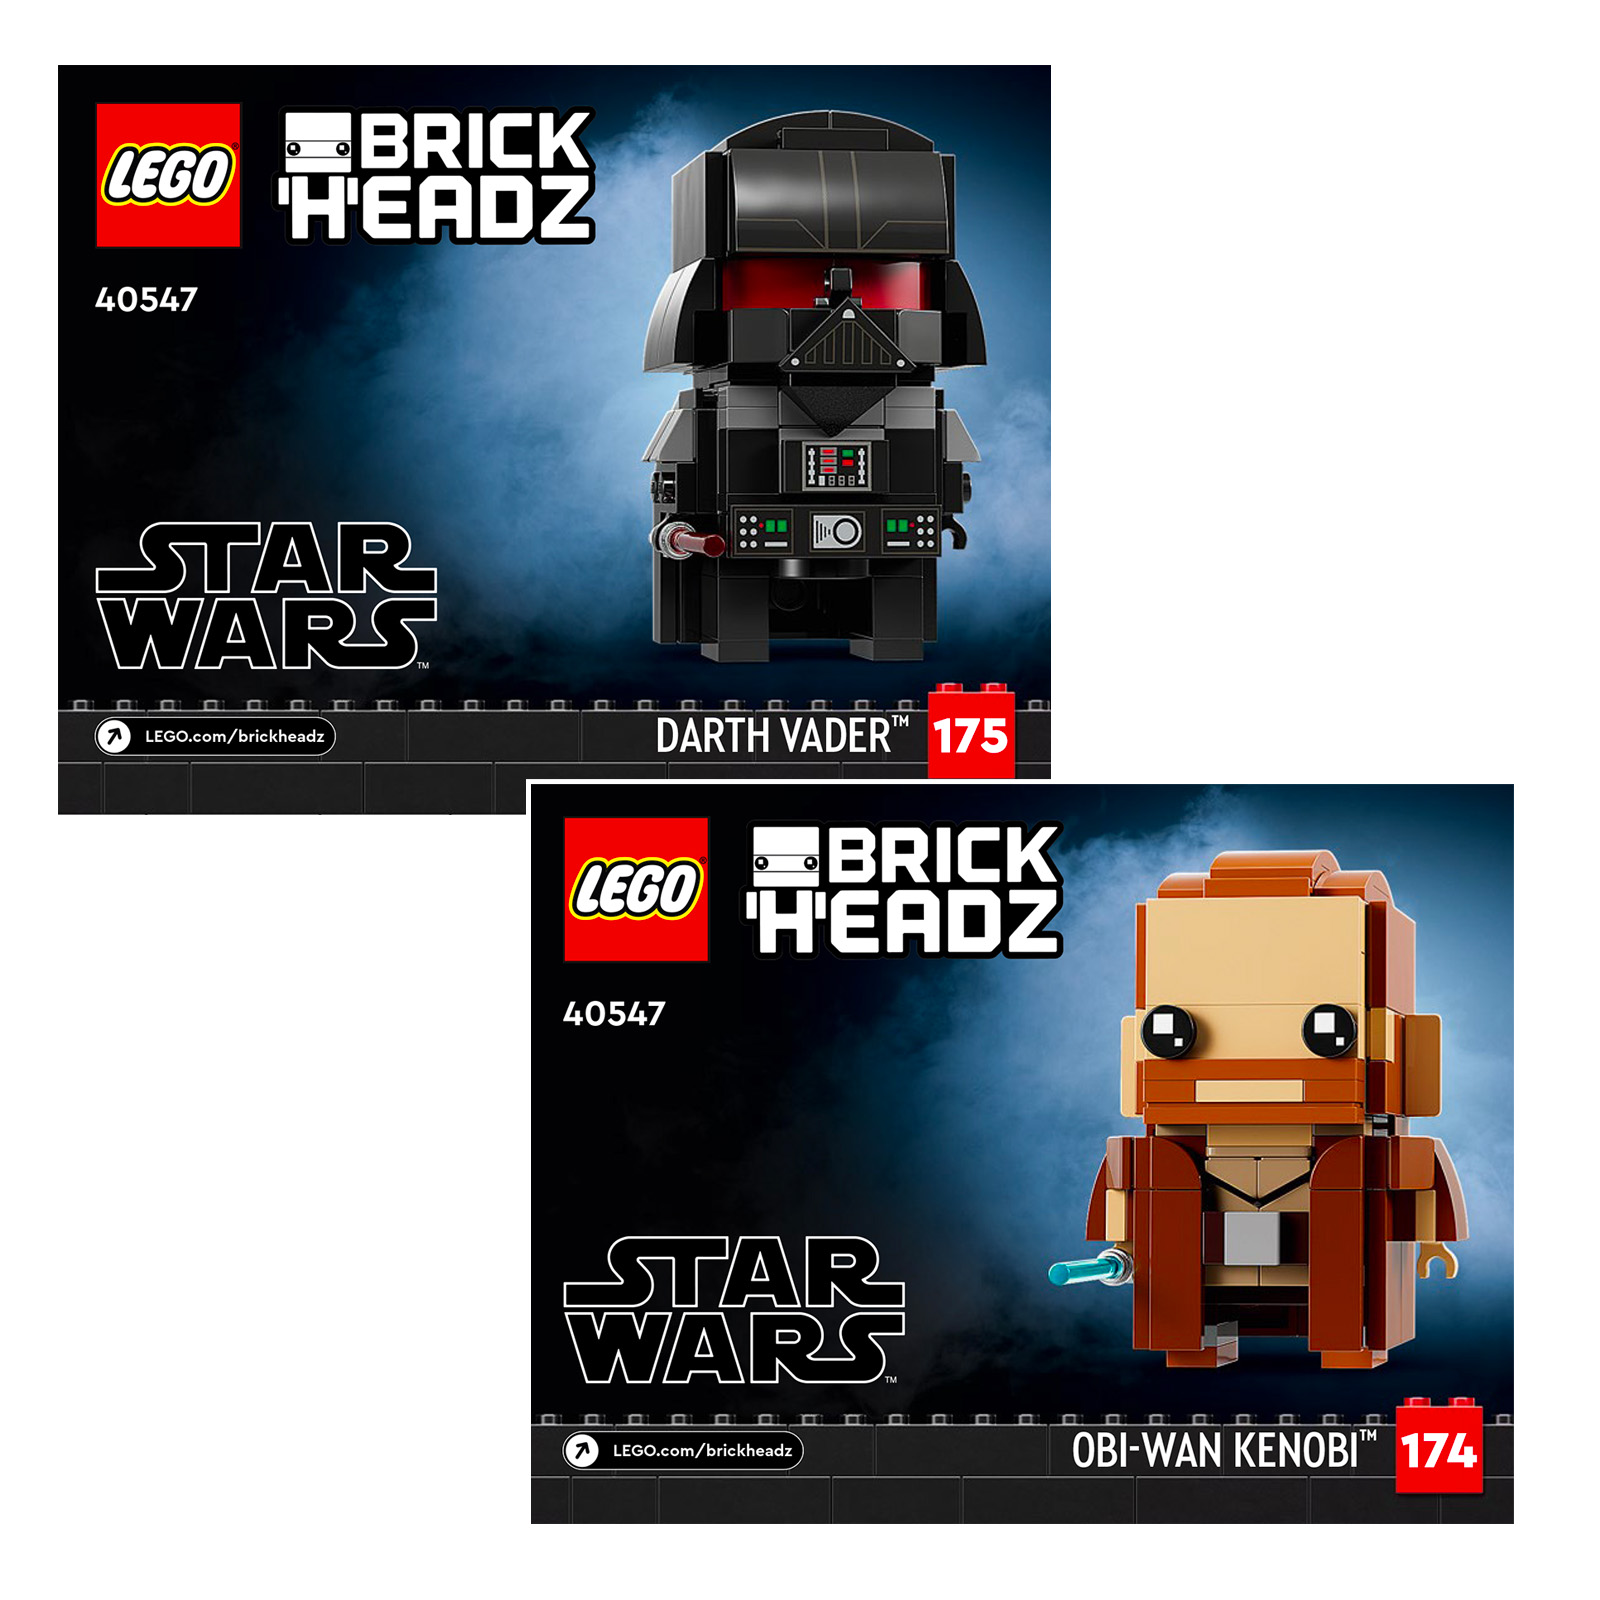 LEGO Star Wars BrickHeadz 40547 Obi-Wan Kenobi a Darth Vader: Delweddau Cyntaf